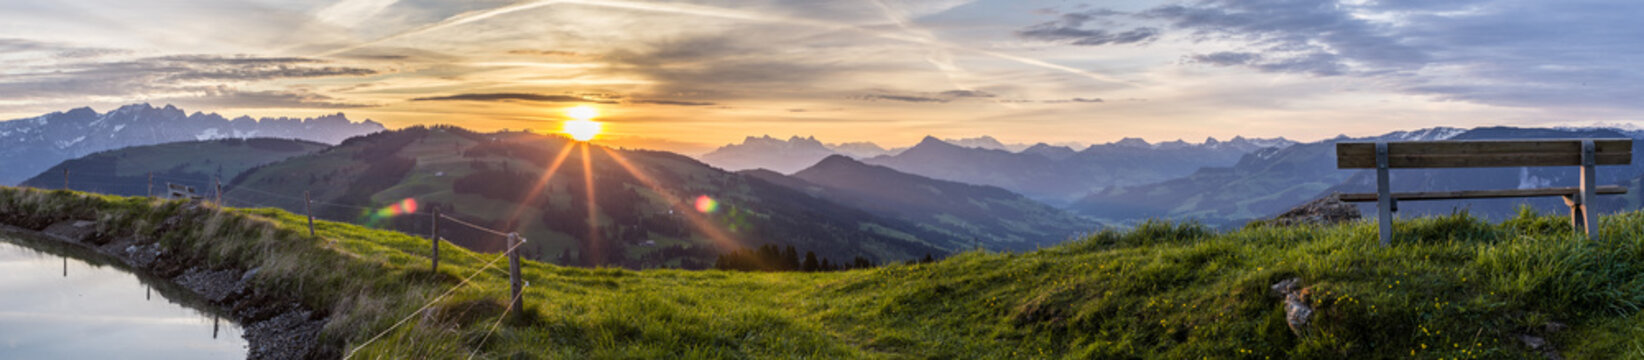 Fototapeta Sonnenaufgang am Berg 